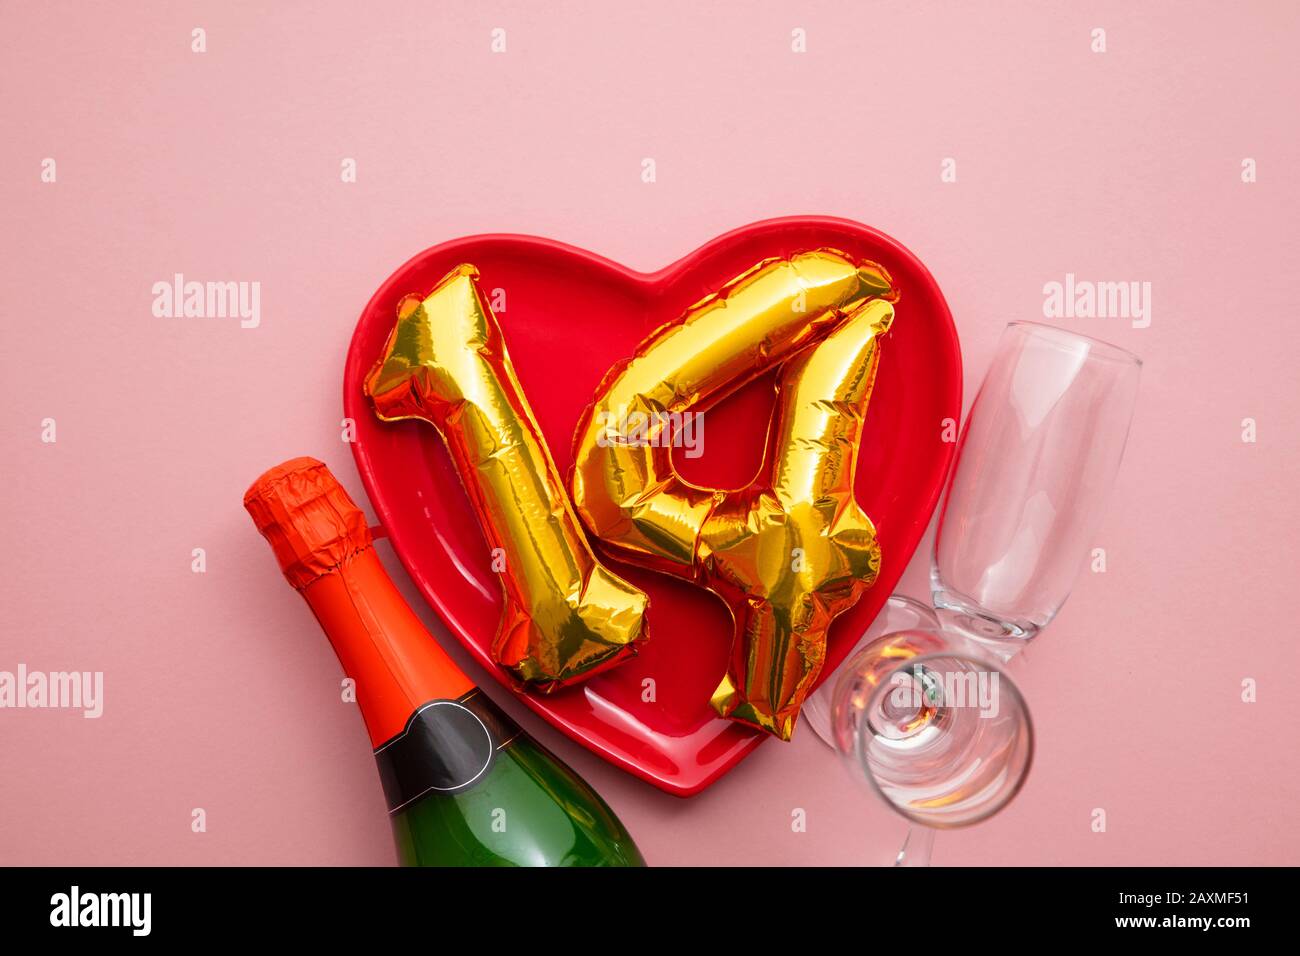 14 février fond romantique de la Saint Valentin Banque D'Images